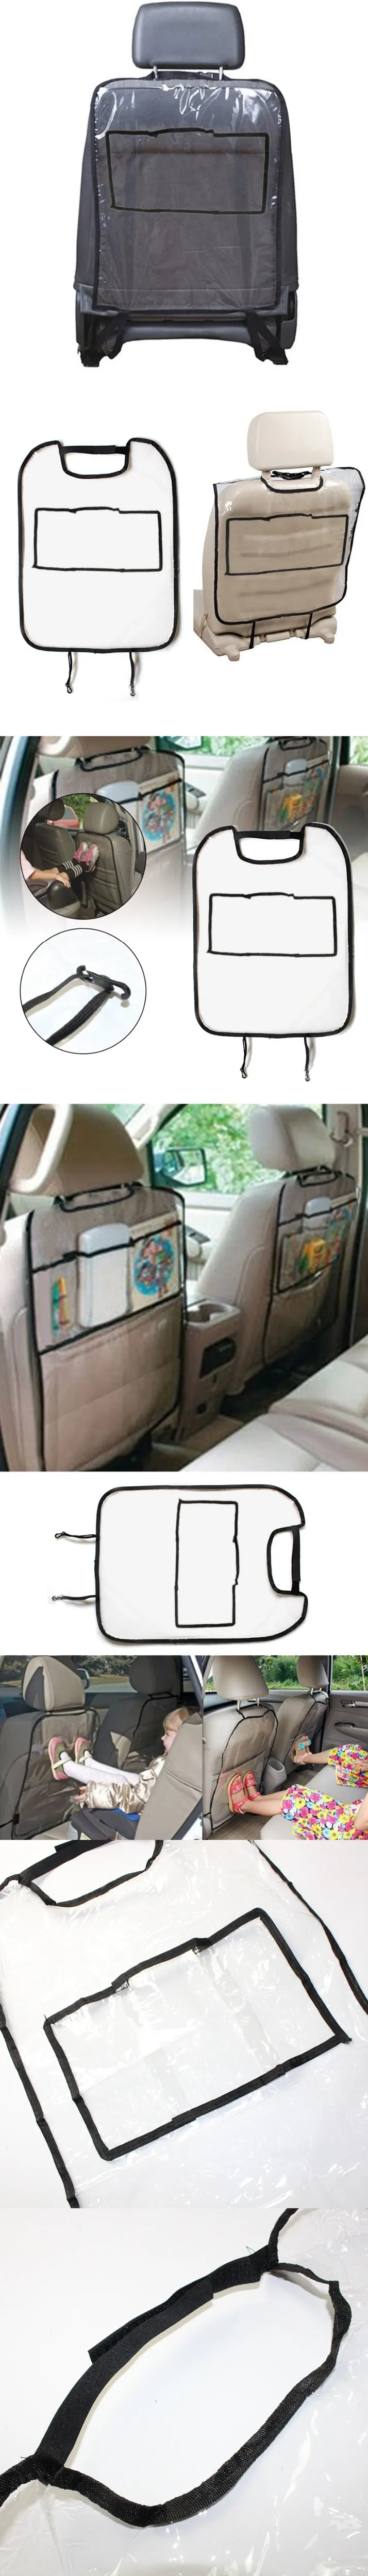 Противоударный коврик для малышей, чехол на заднее сидение автомобиля, защита для автокресла, защита заднего сиденья автомобиля